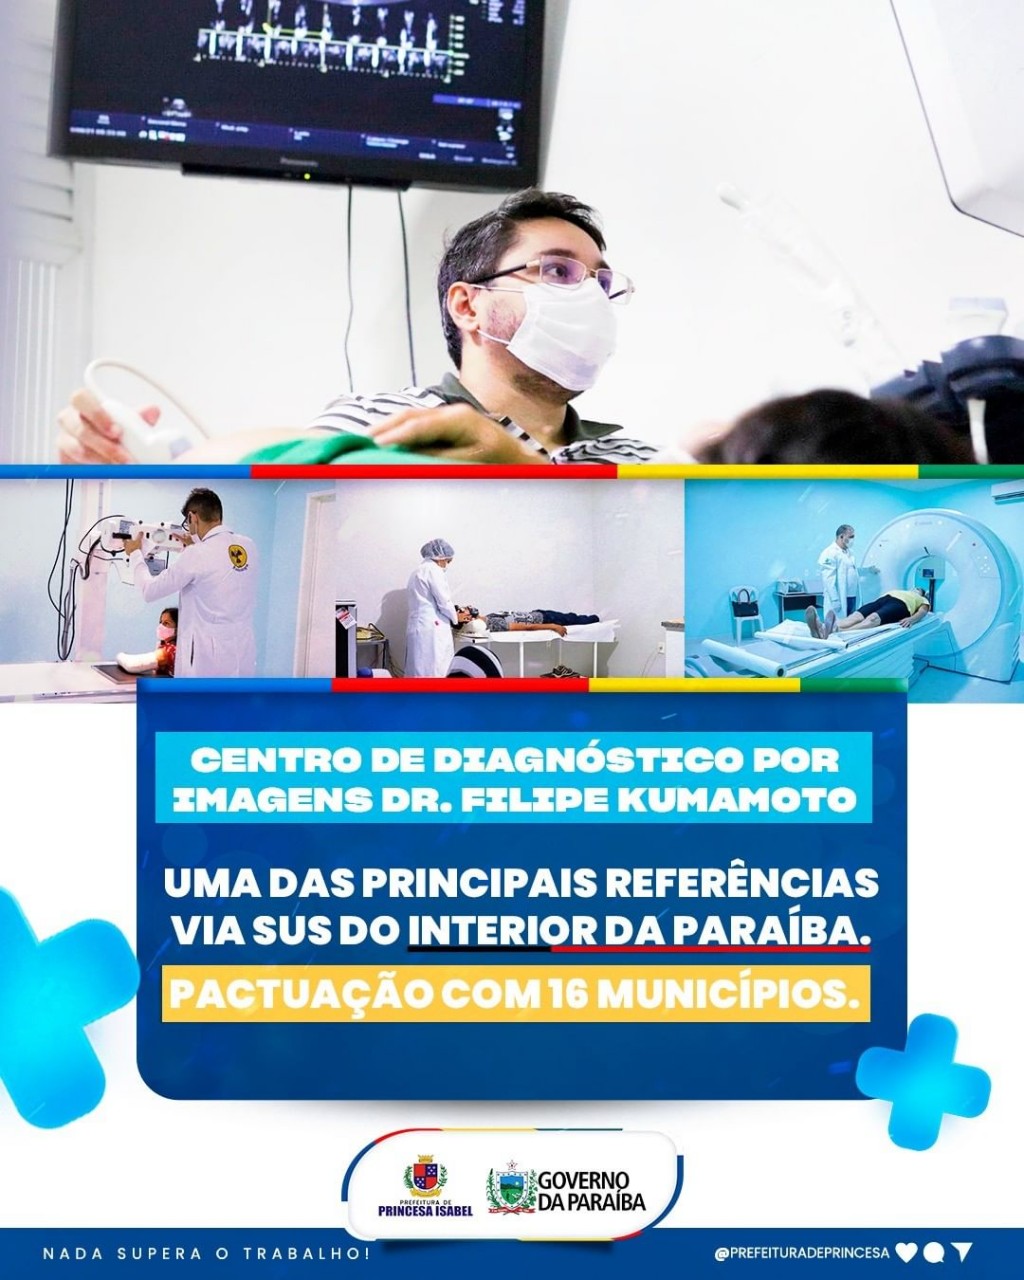 O Centro de Diagnóstico por Imagem Dr. Felipe Kumamoto realiza, diariamente, exames de raio-x, tomografias, ultrassonografias, mamografias e eletroenc